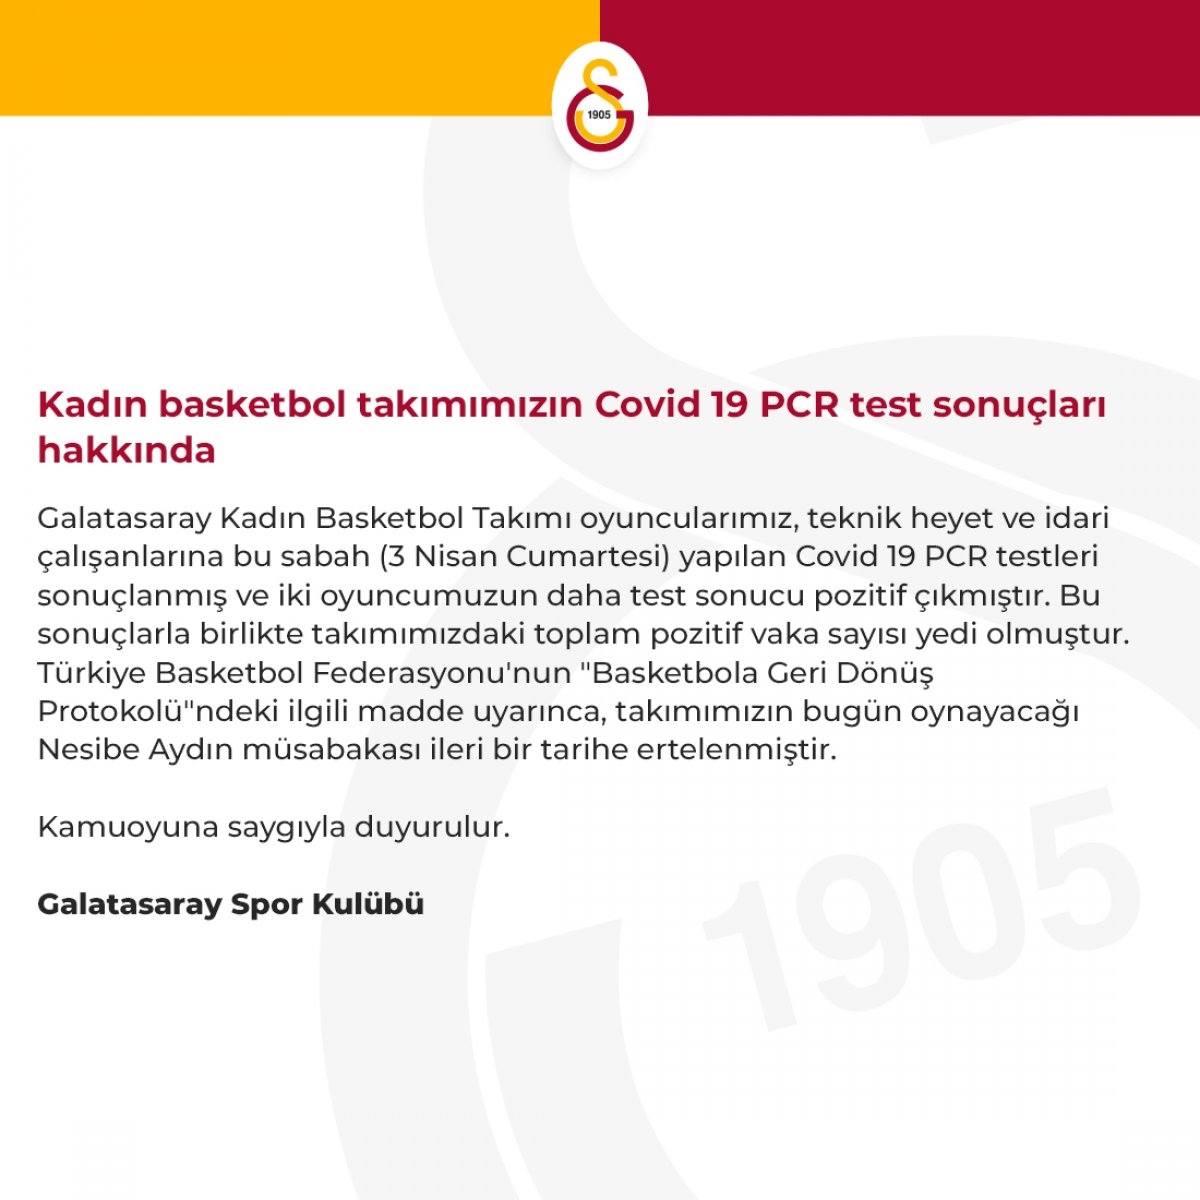 Galatasaray - Nesibe Aydın basket maçı ertelendi.